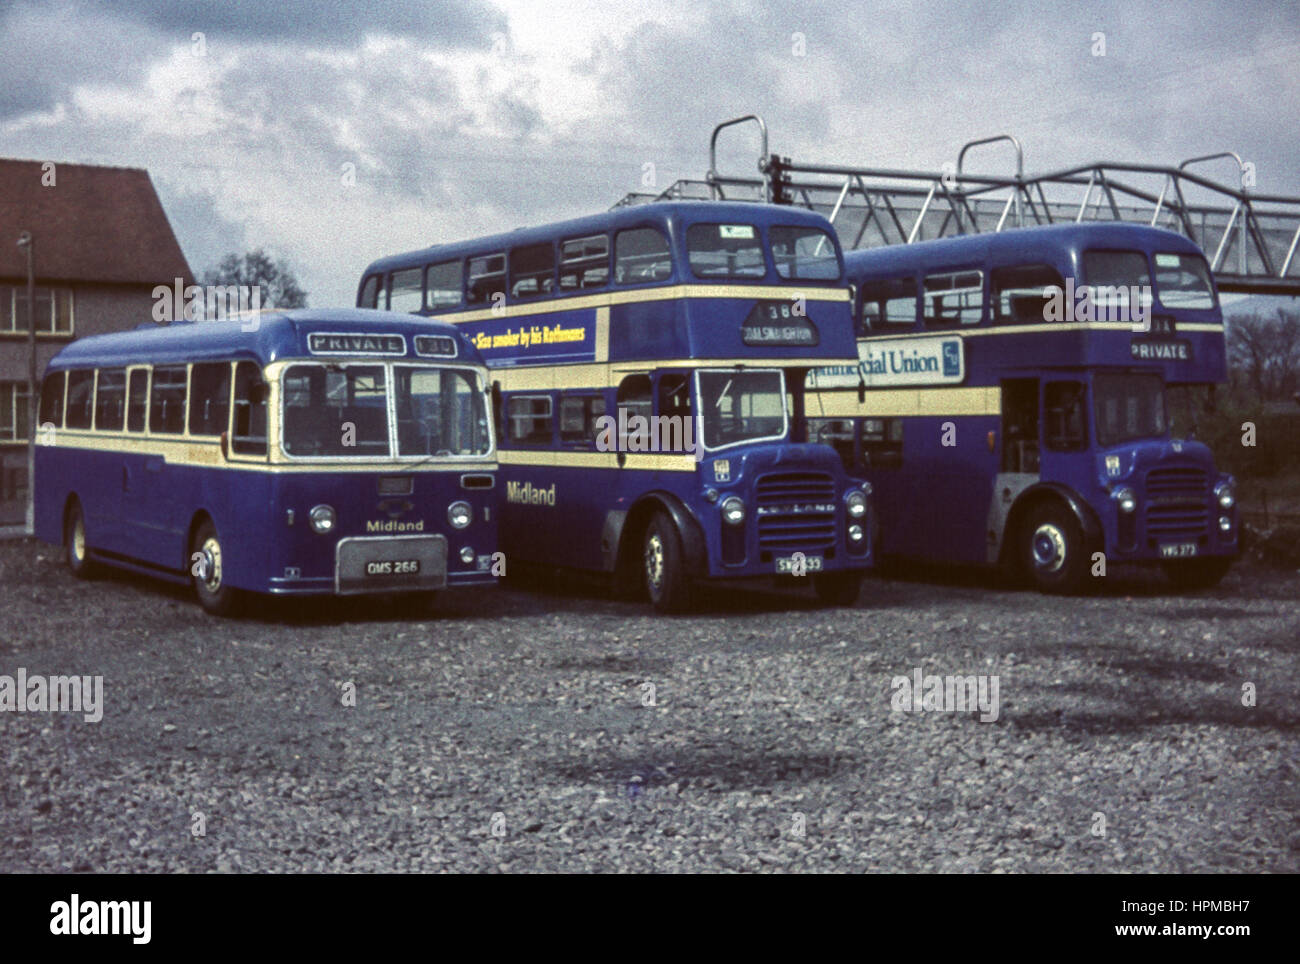 Escocia, Reino Unido - 1973: Vintage imagen de autobuses. Alexander Midland autobuses estacionados en el patio (inscripciones OMS 266 y GTS 633). Foto de stock